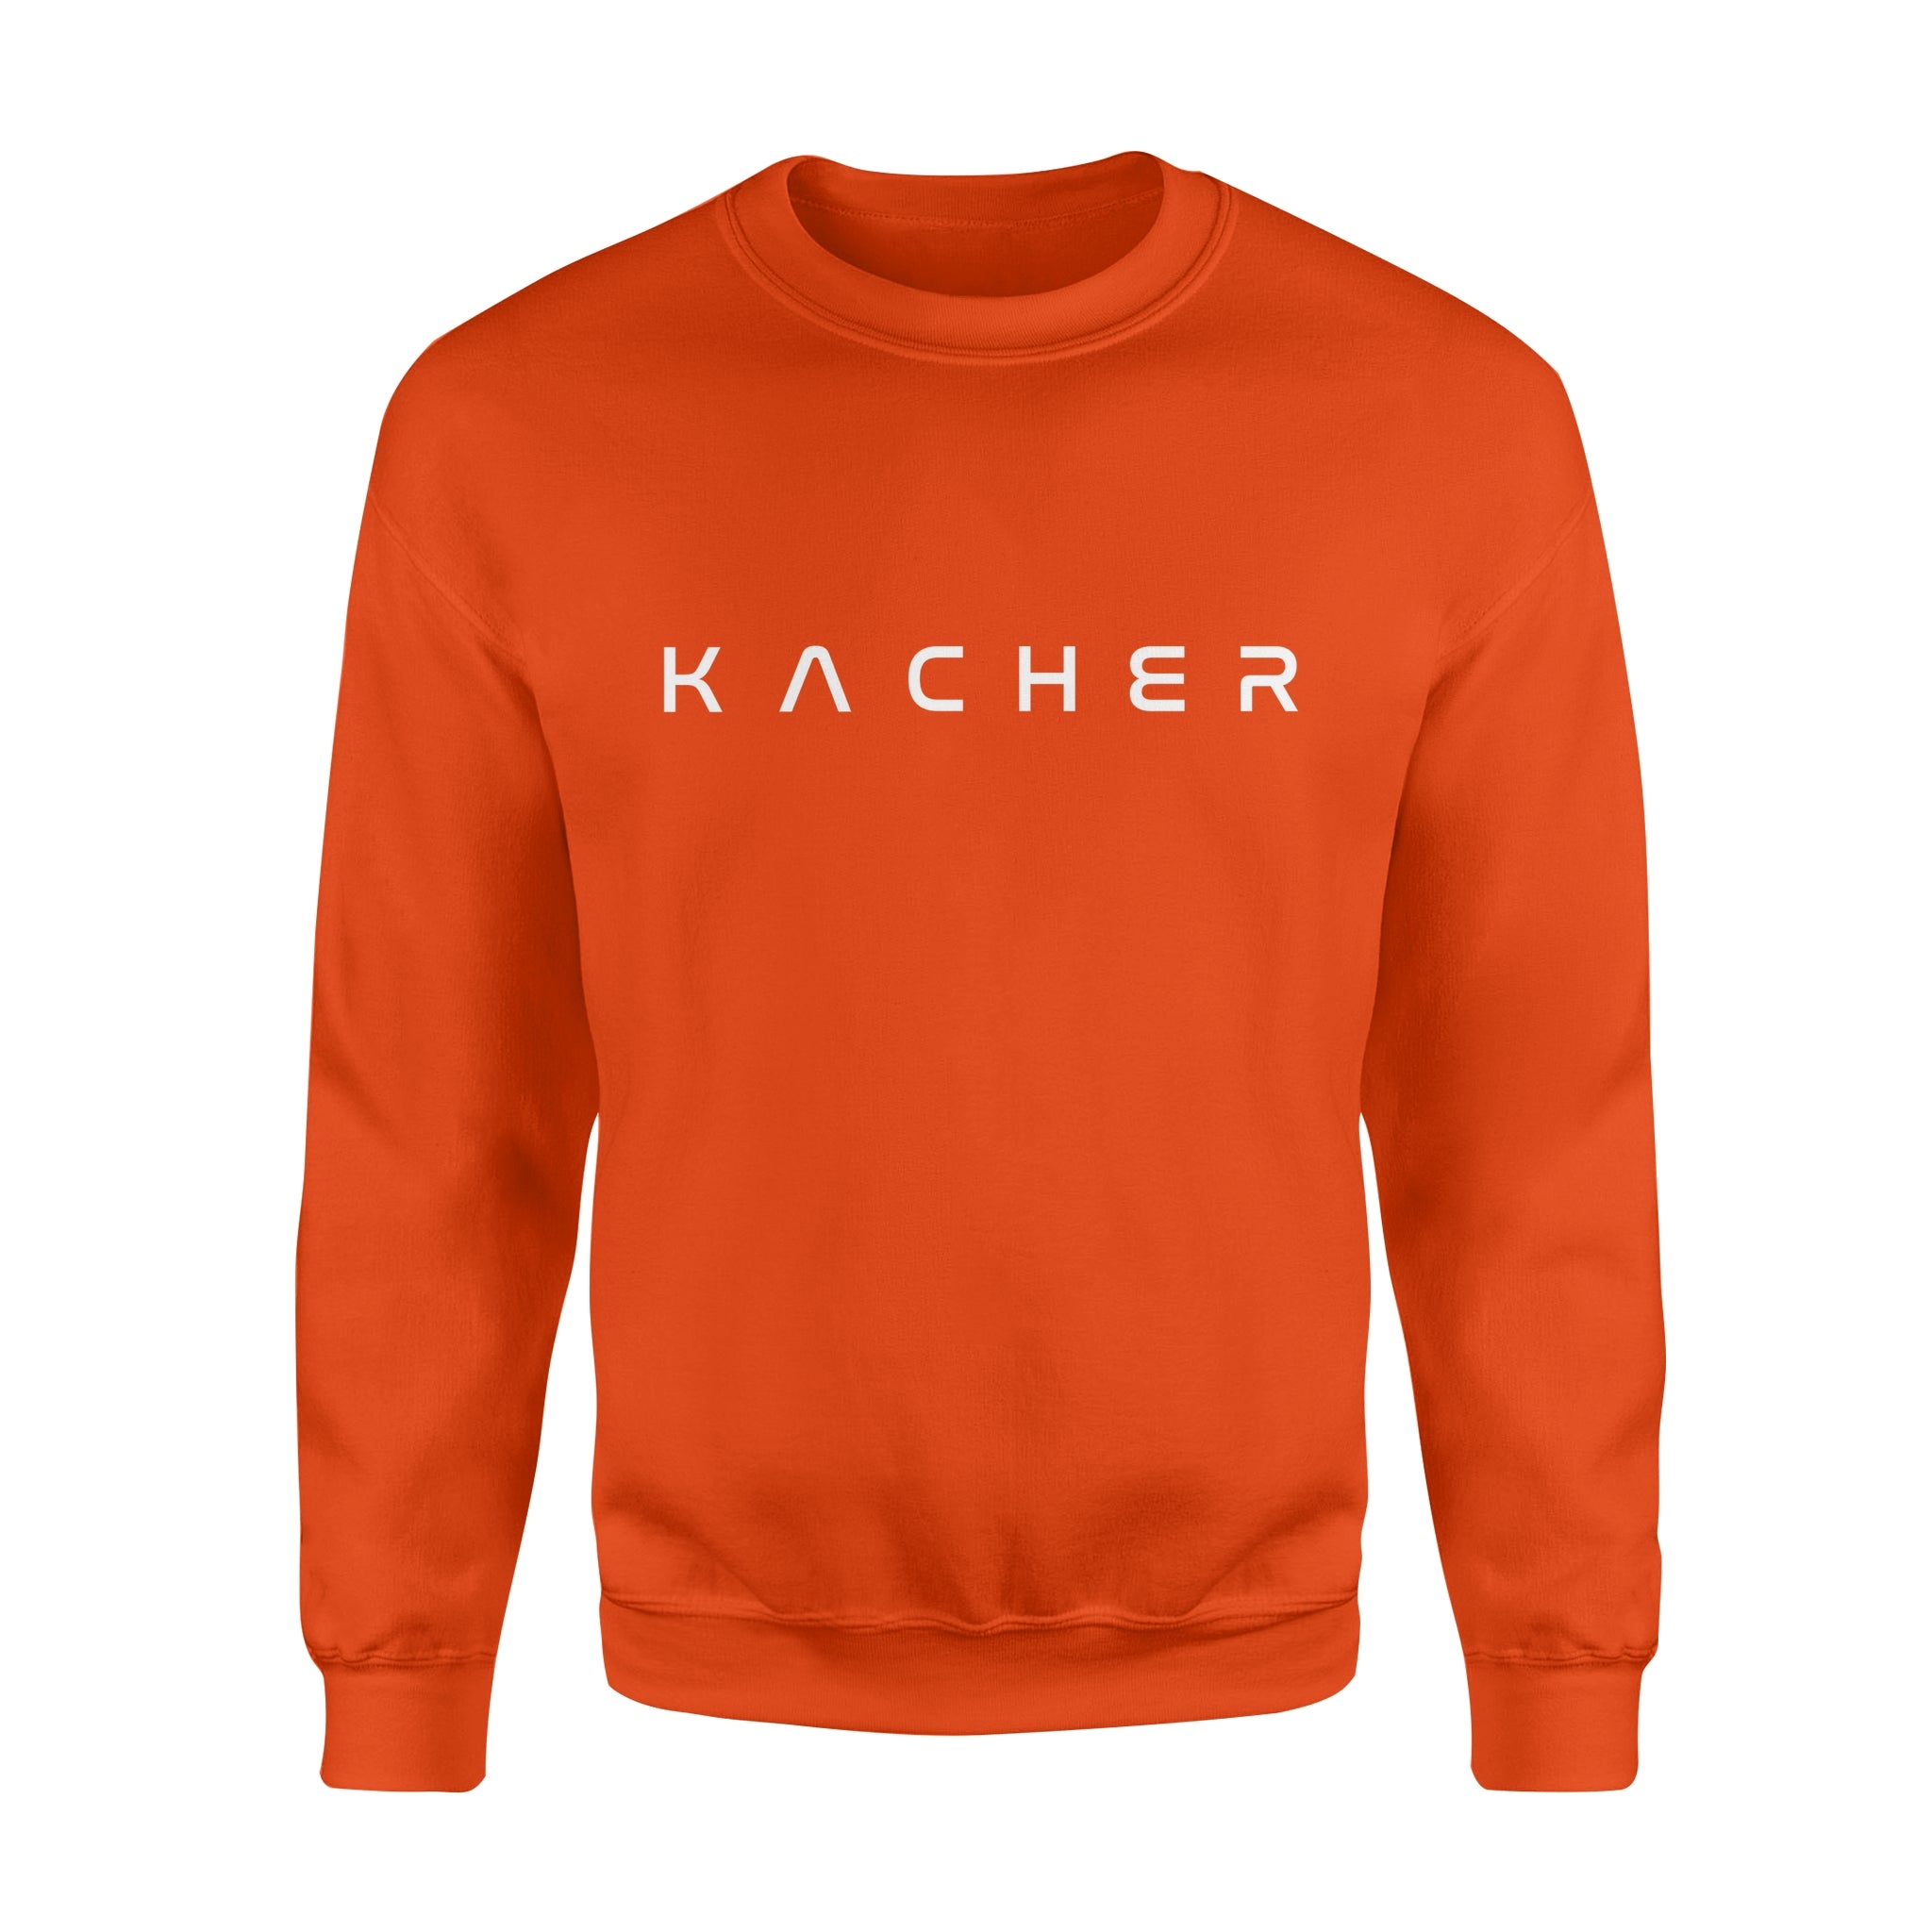 KACHER - Fleece Sweatshirt